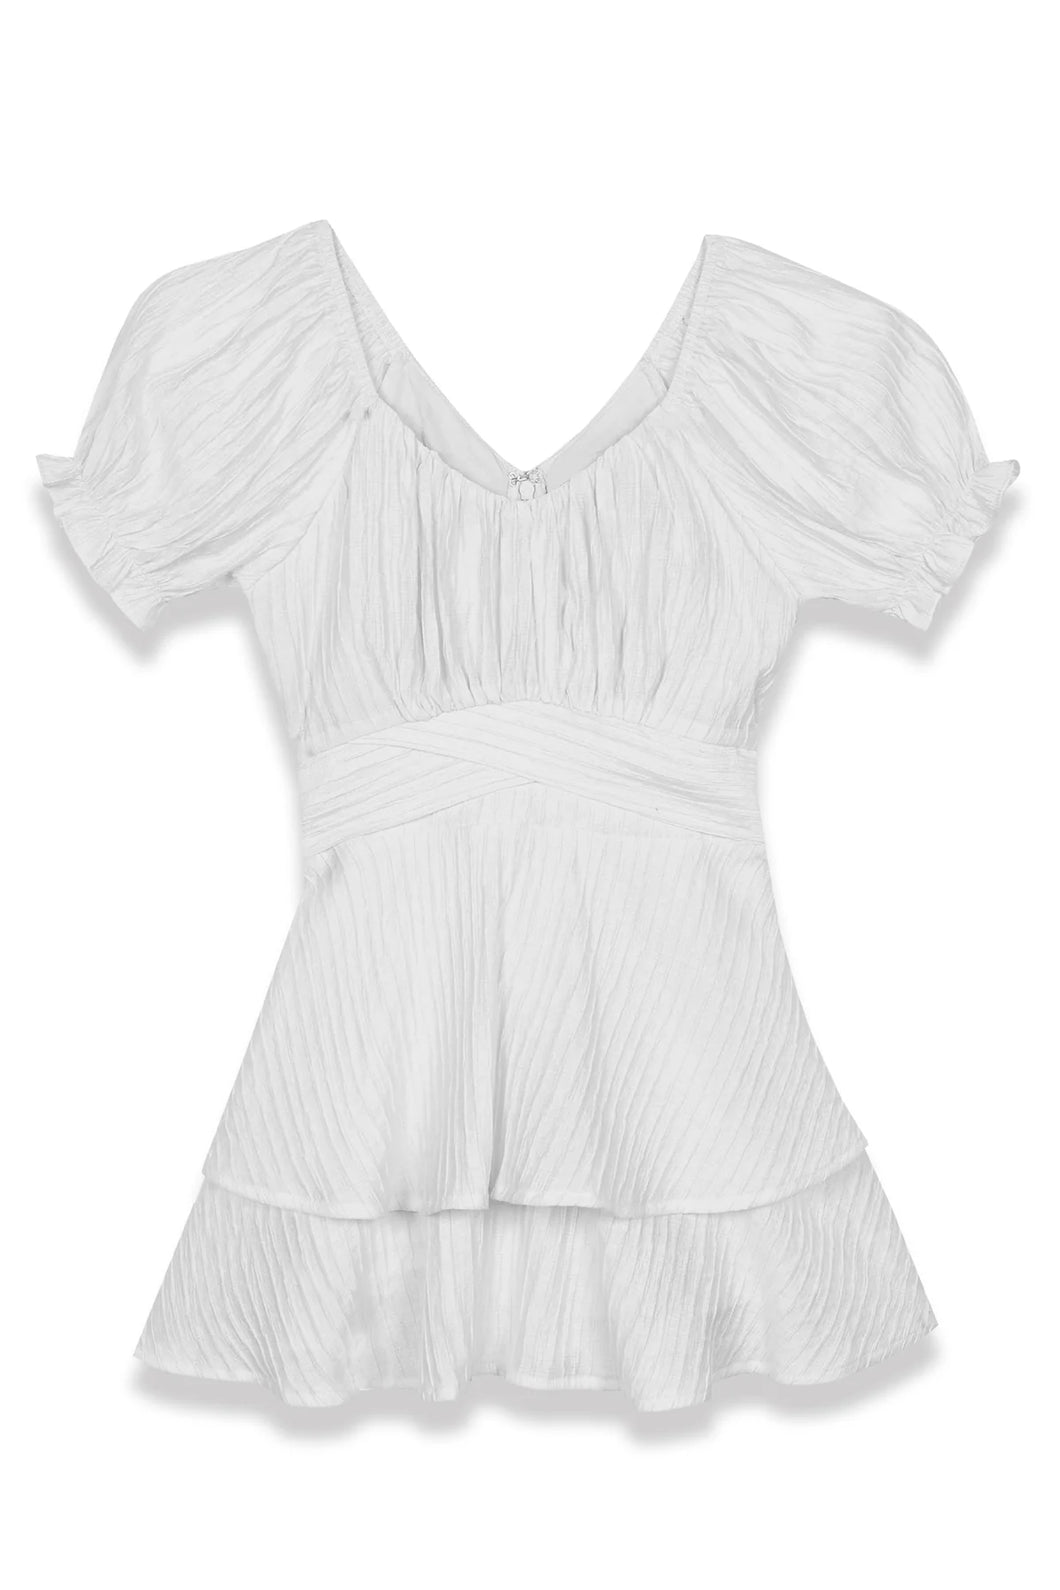 Katie J Delilah Dress in White